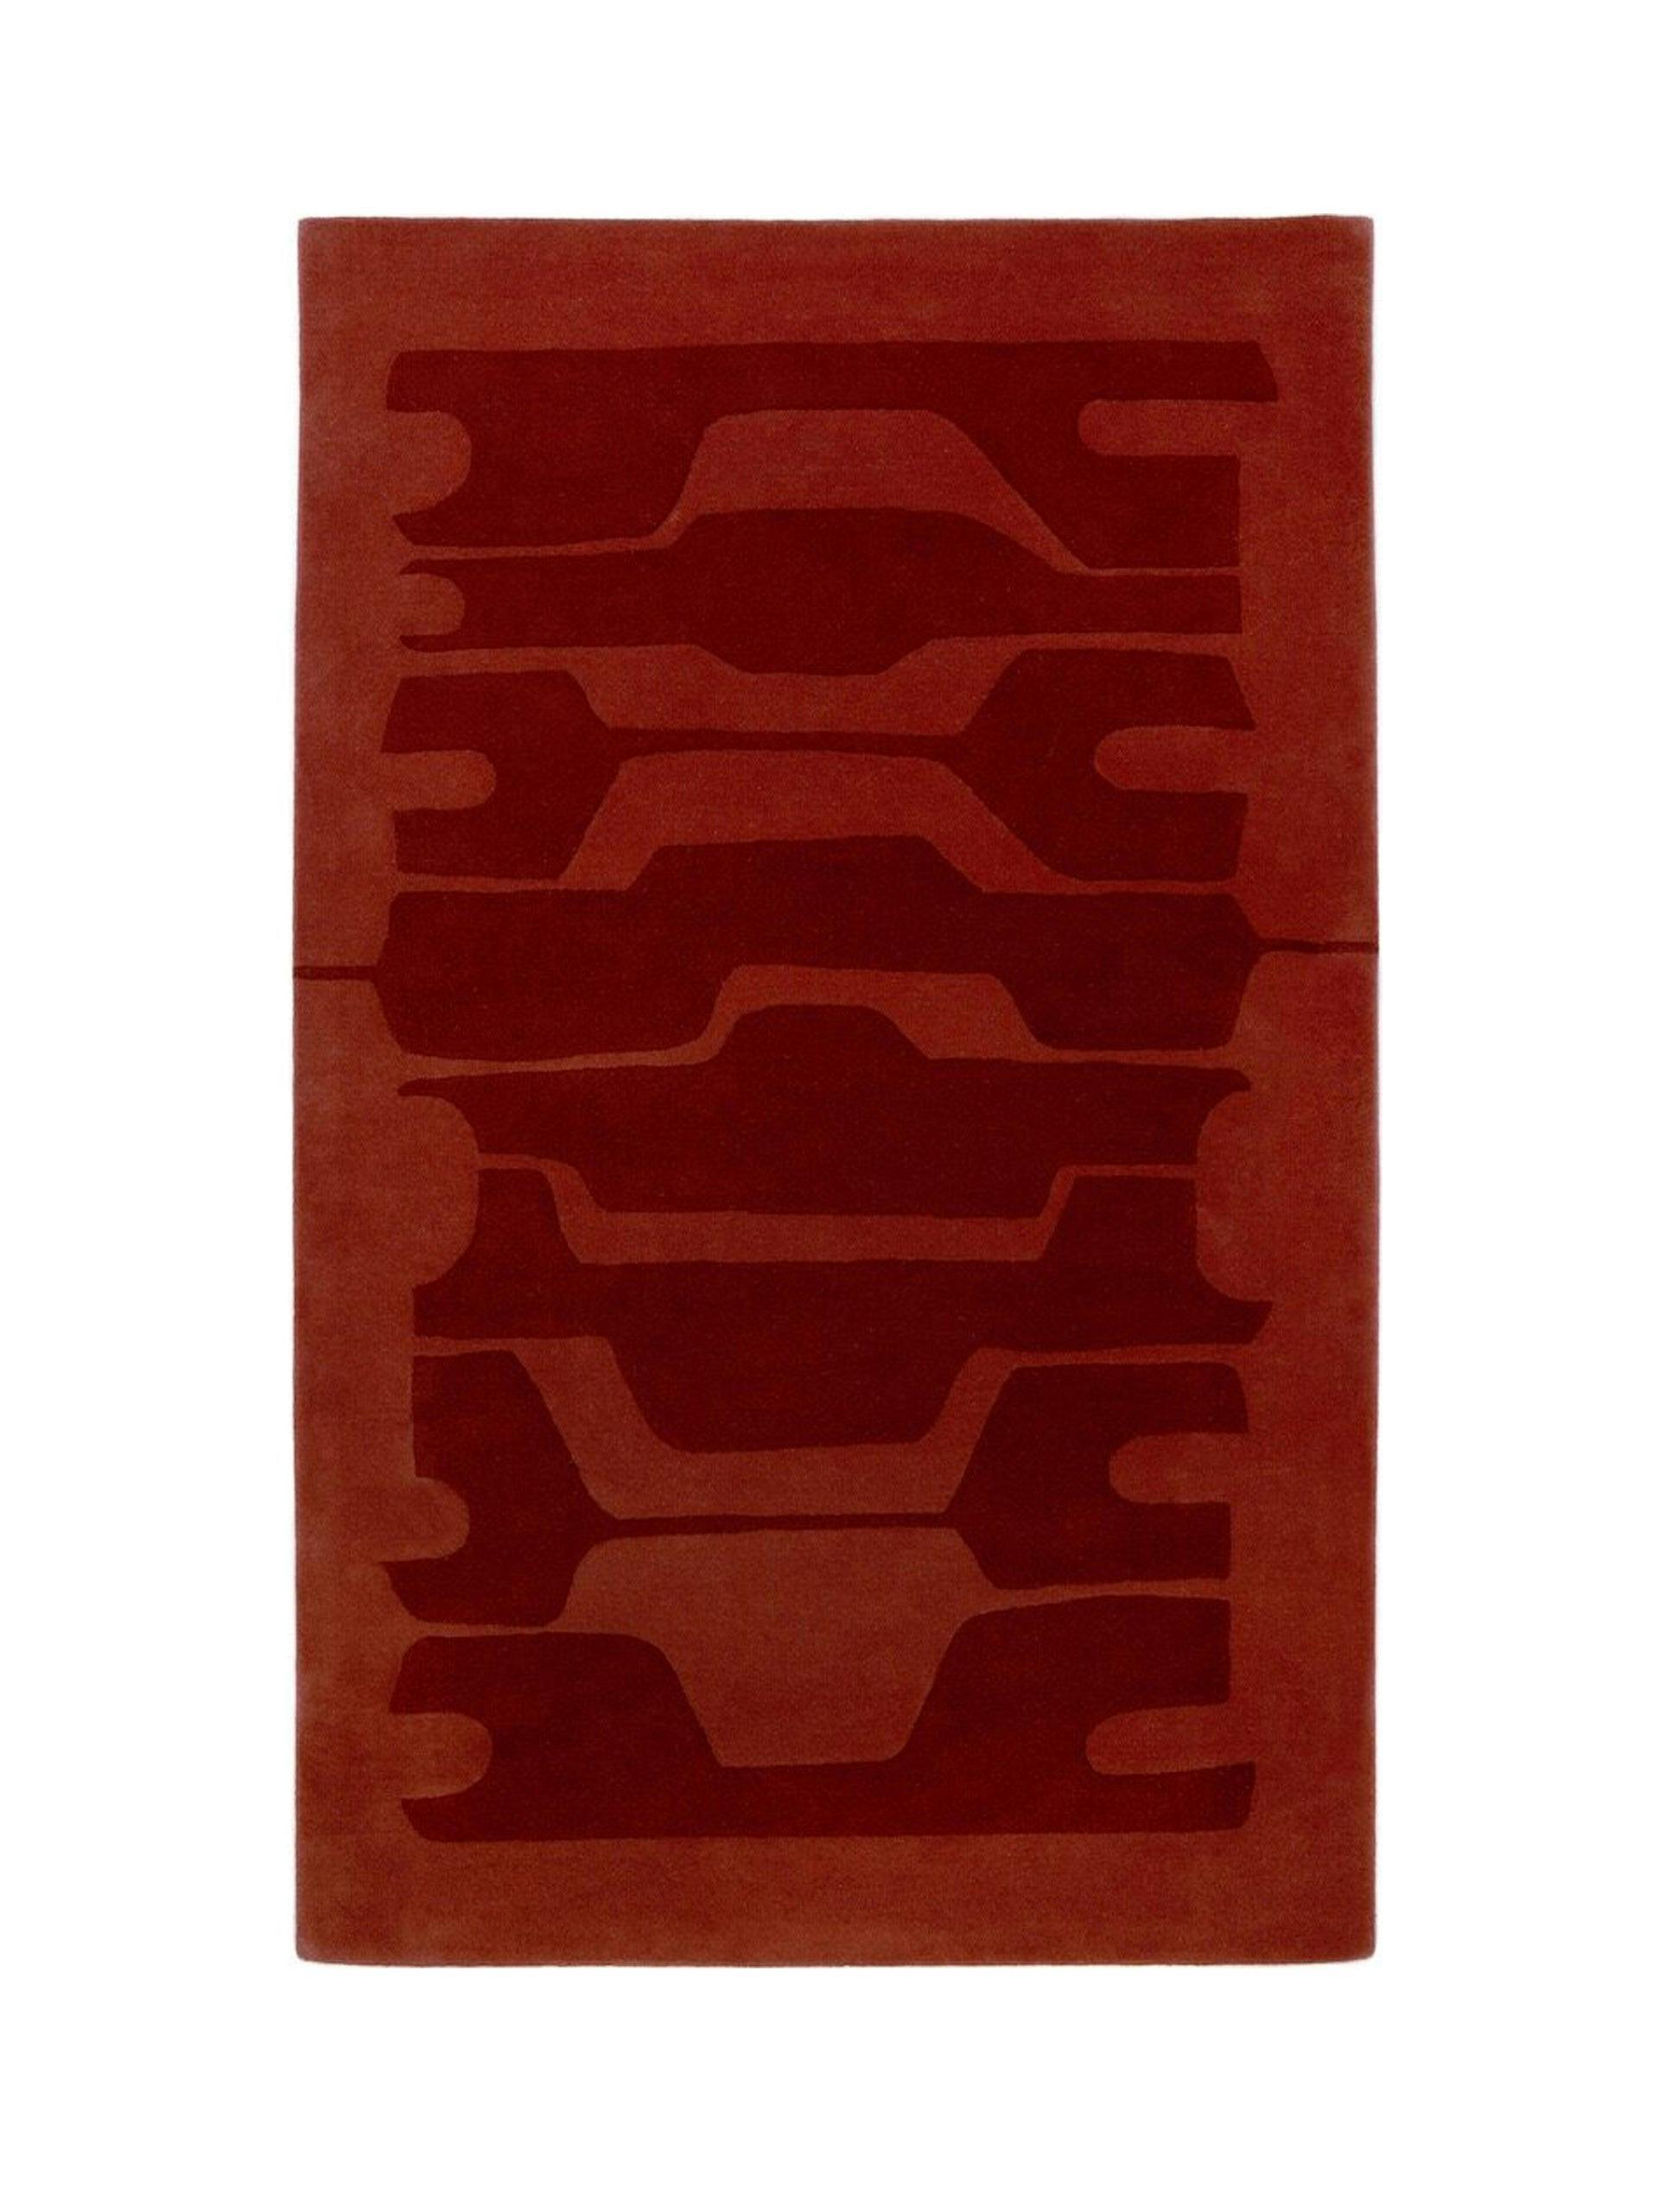 Benares Rust by Matthew Hilton - 1.2 x 1.9m